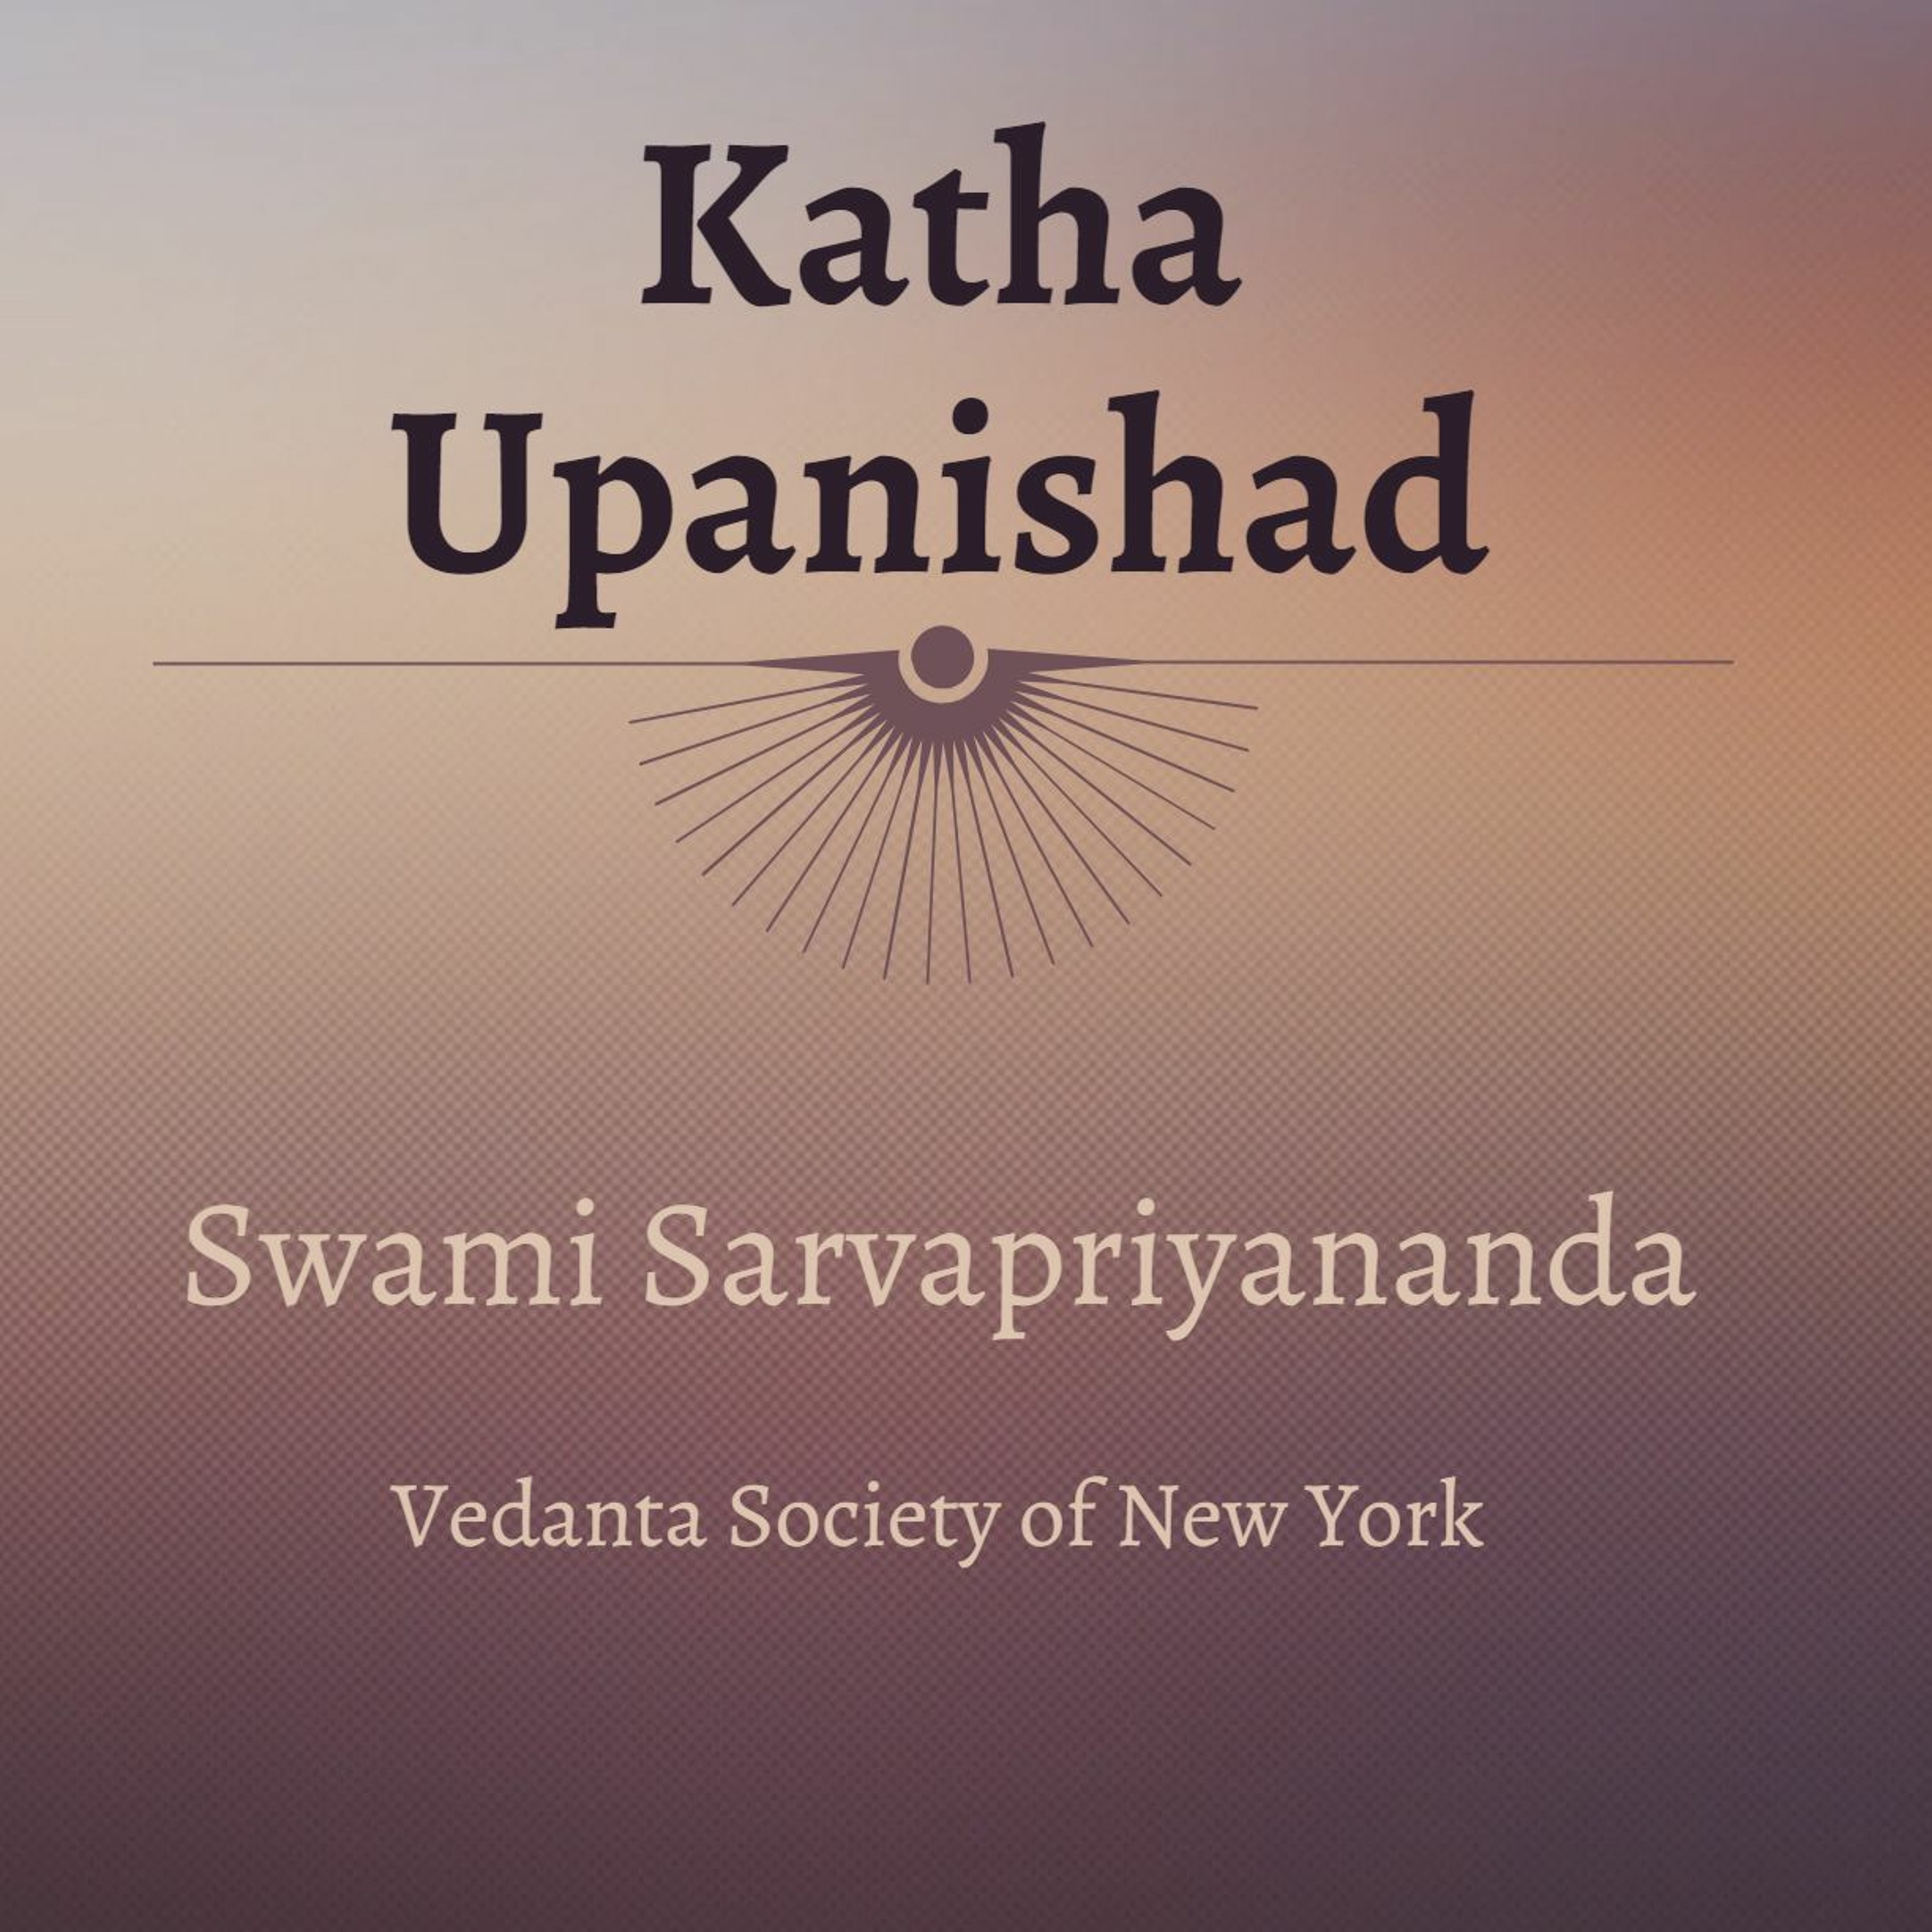 23. Katha Upanishad | Mantra 1.3.13 | Swami Sarvapriyananda